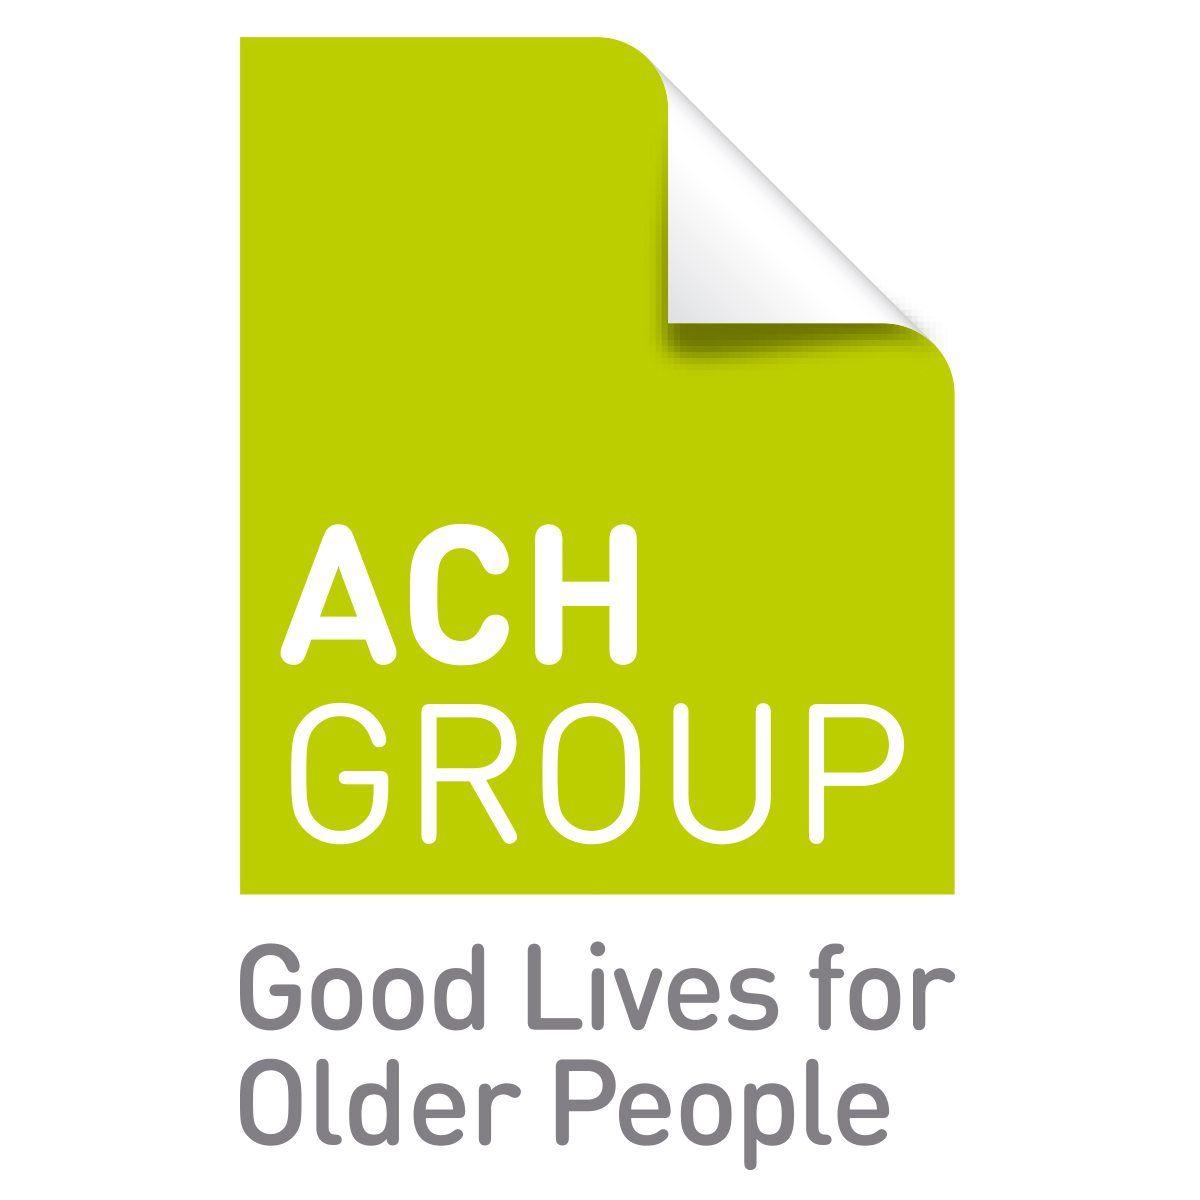 ACH Logo - ACH Group